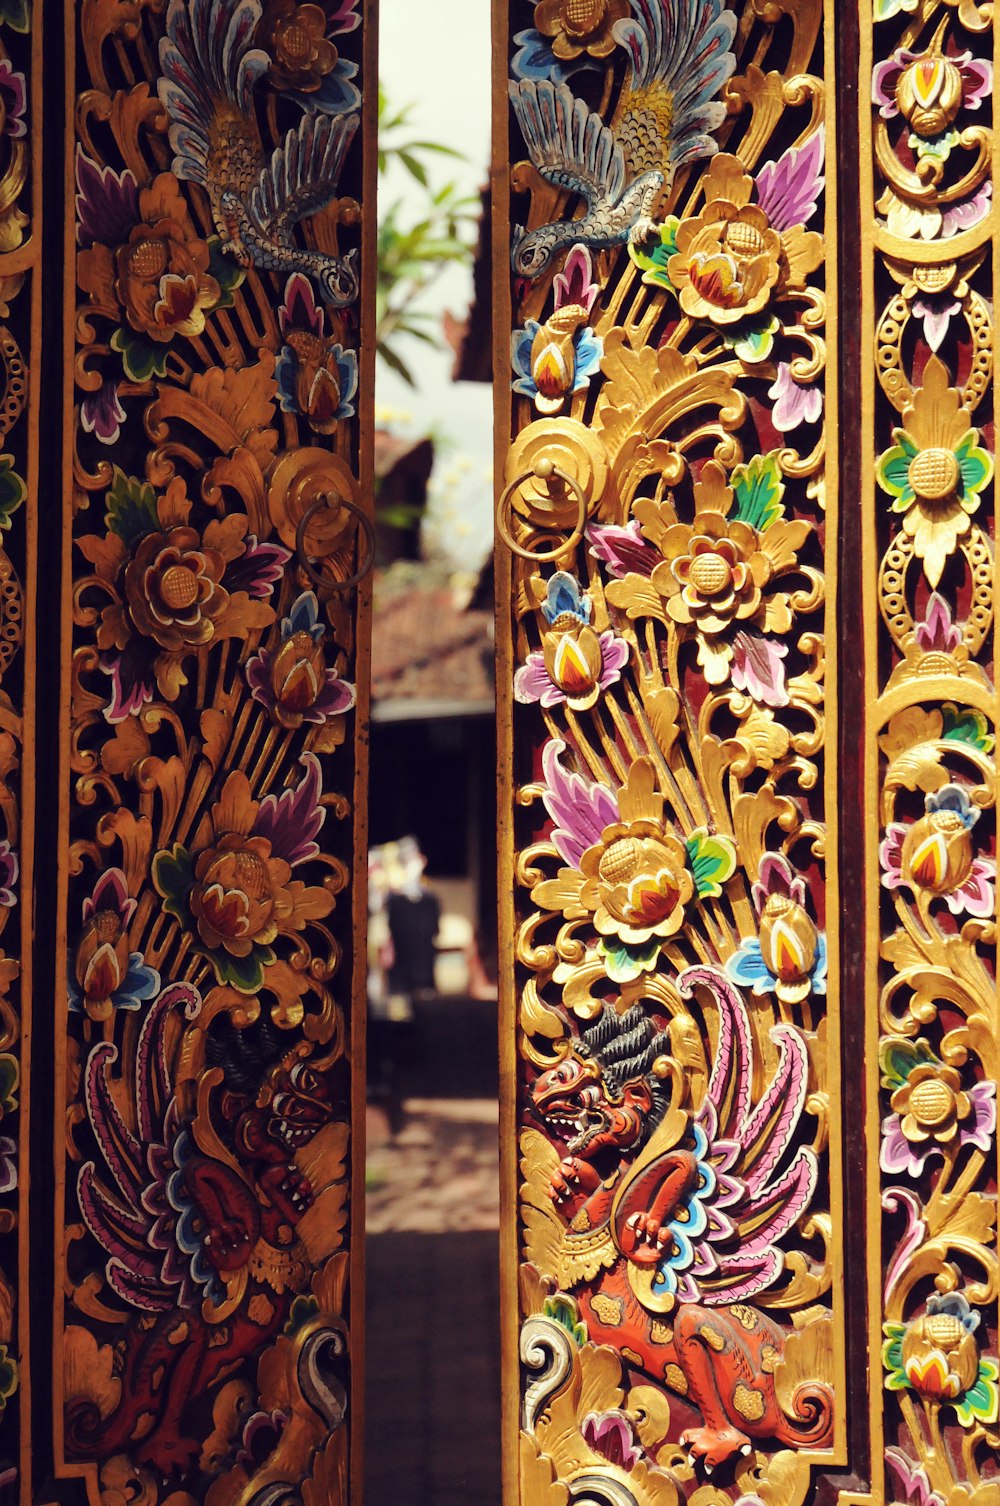 a close up of a decorative wooden door